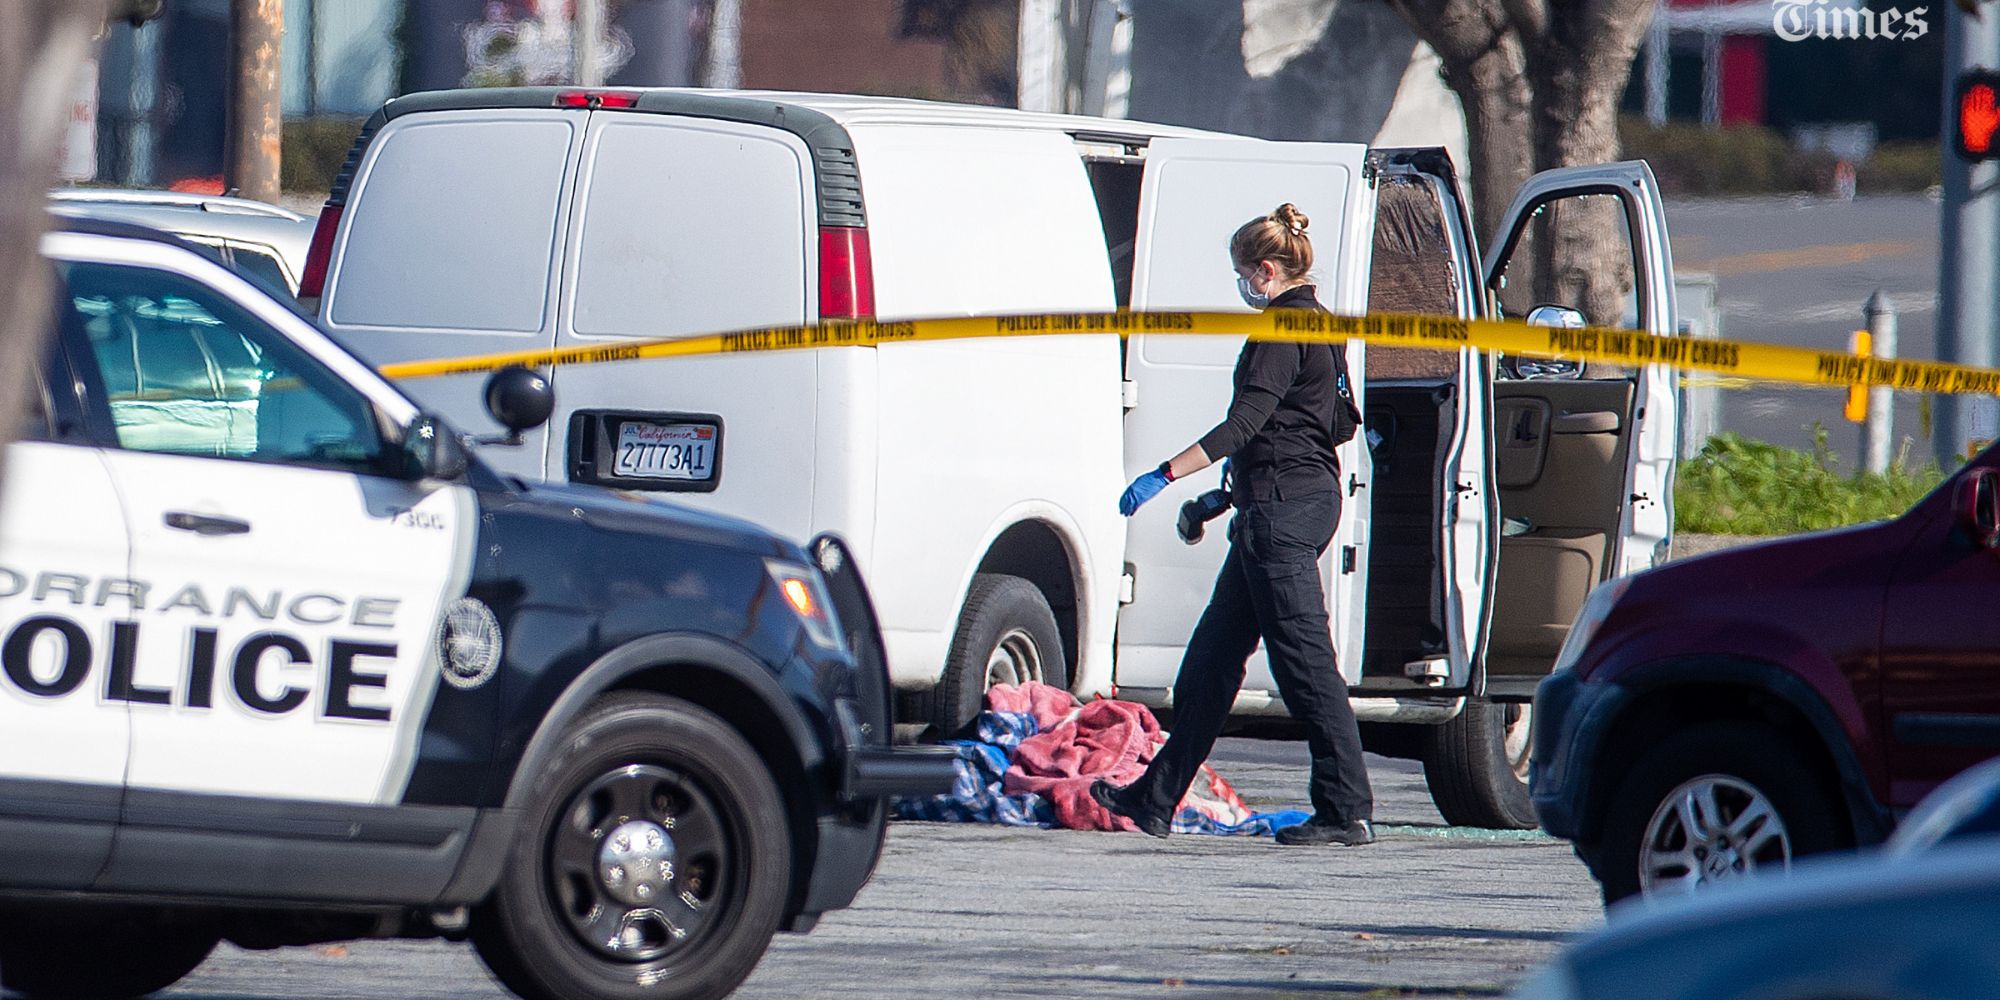 Εικόνα από το σημείο της επίθεσης στο Λος Άντζελες